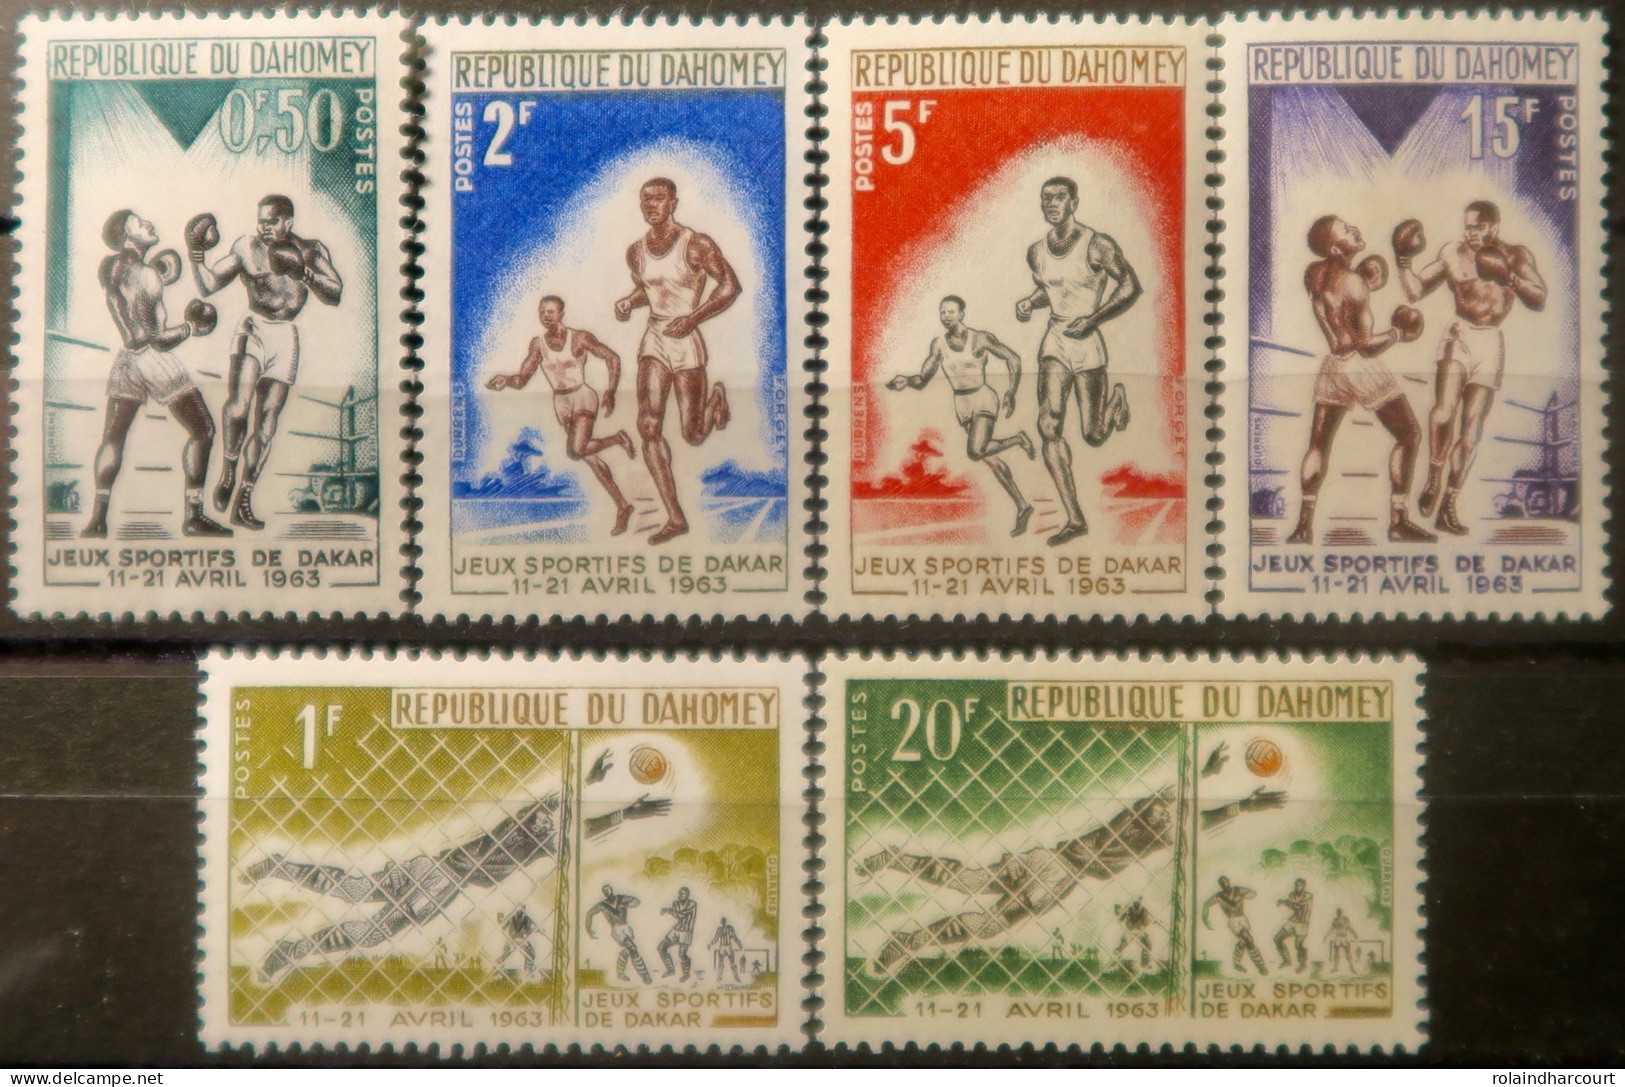 LP3844/2214 - DAHOMEY - 1963 - Jeux Sportifs De Dakar - SERIE COMPLETE - N°192 à 197 NEUFS** - Africa (Other)